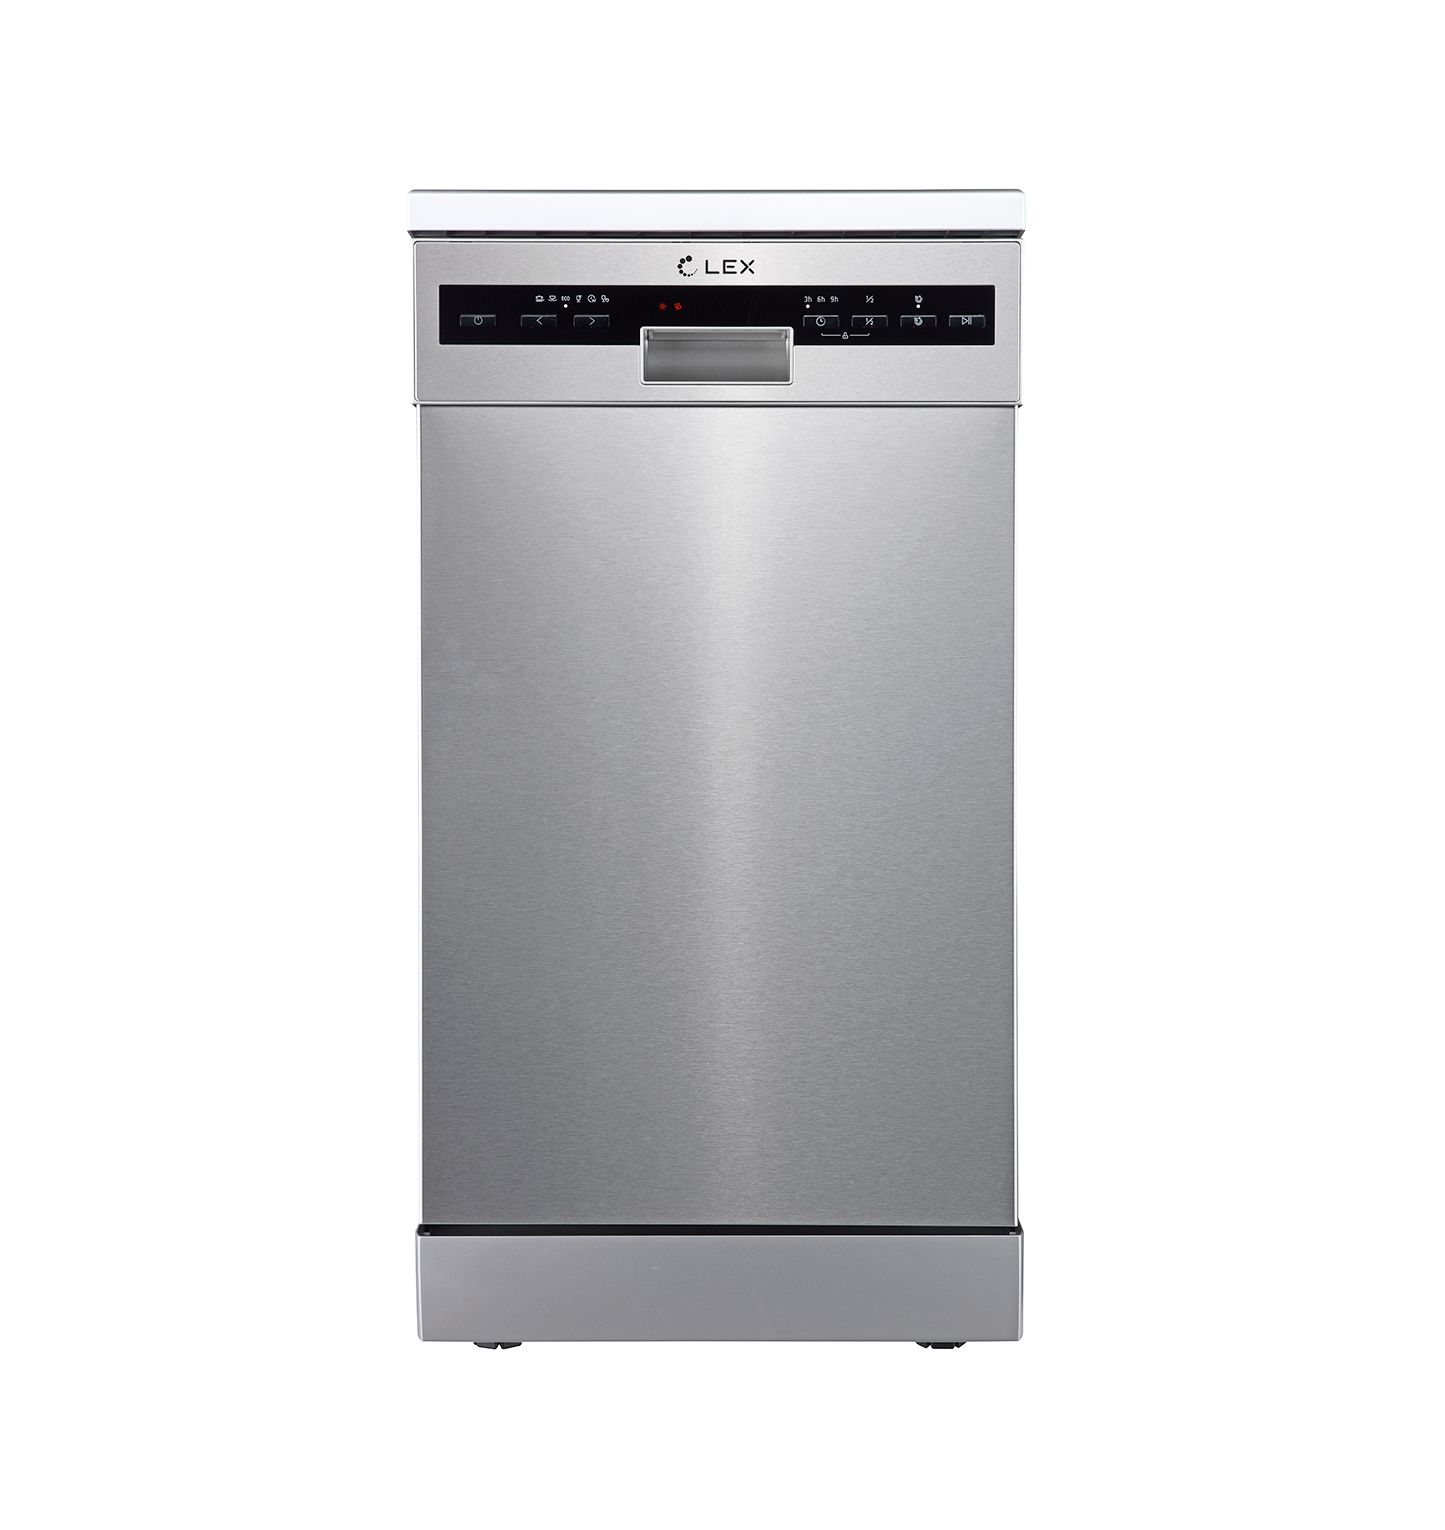 Посудомоечная машина LEX DW 4562 серебристый посудомоечная машина simfer dbp6701 черная